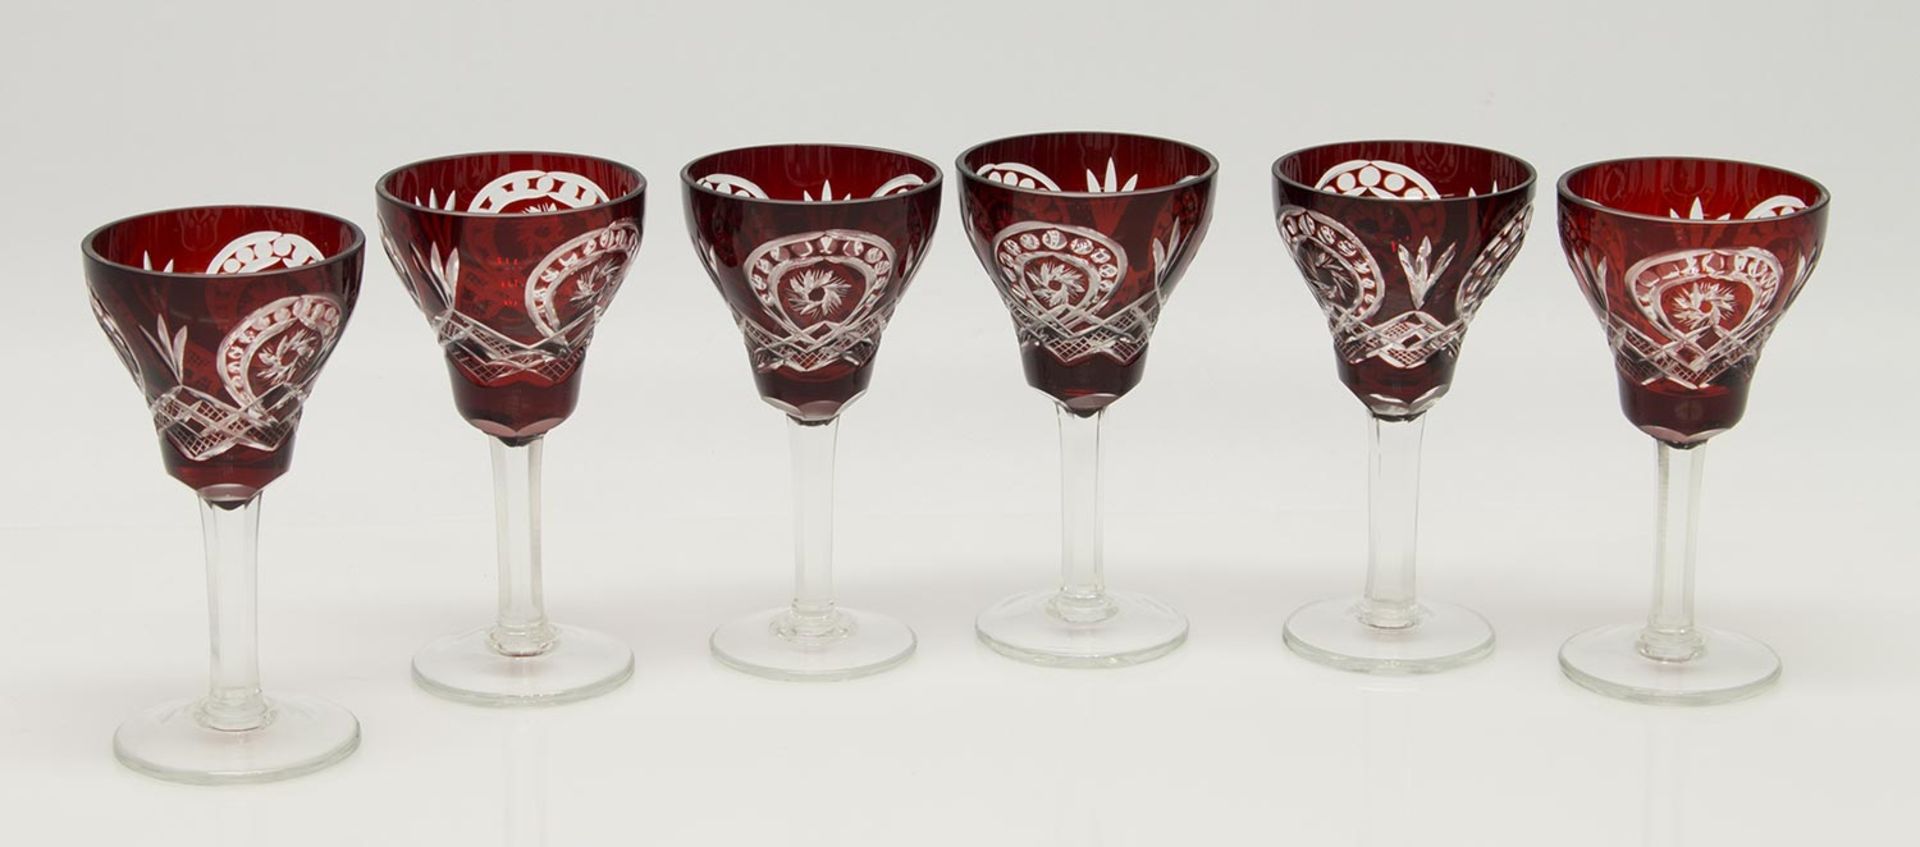 6 Sherry-/ PortweingläserBöhmen, rubinrot überfangenes Glas mit Handschliff, H. 12 cm